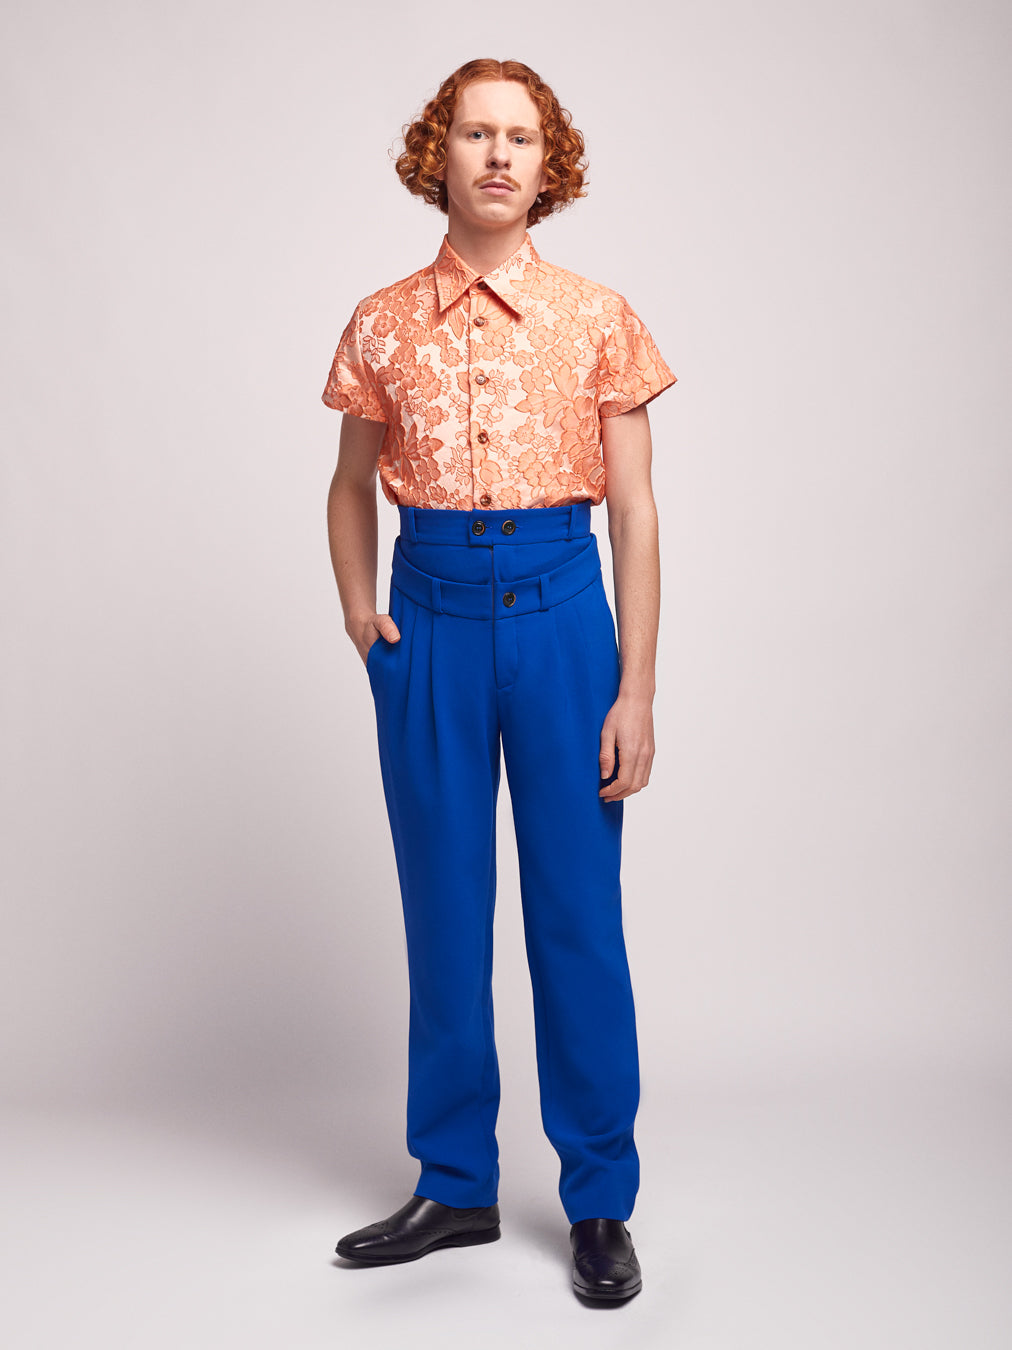 Orange Brocade Shirt Short Sleeve Unisex